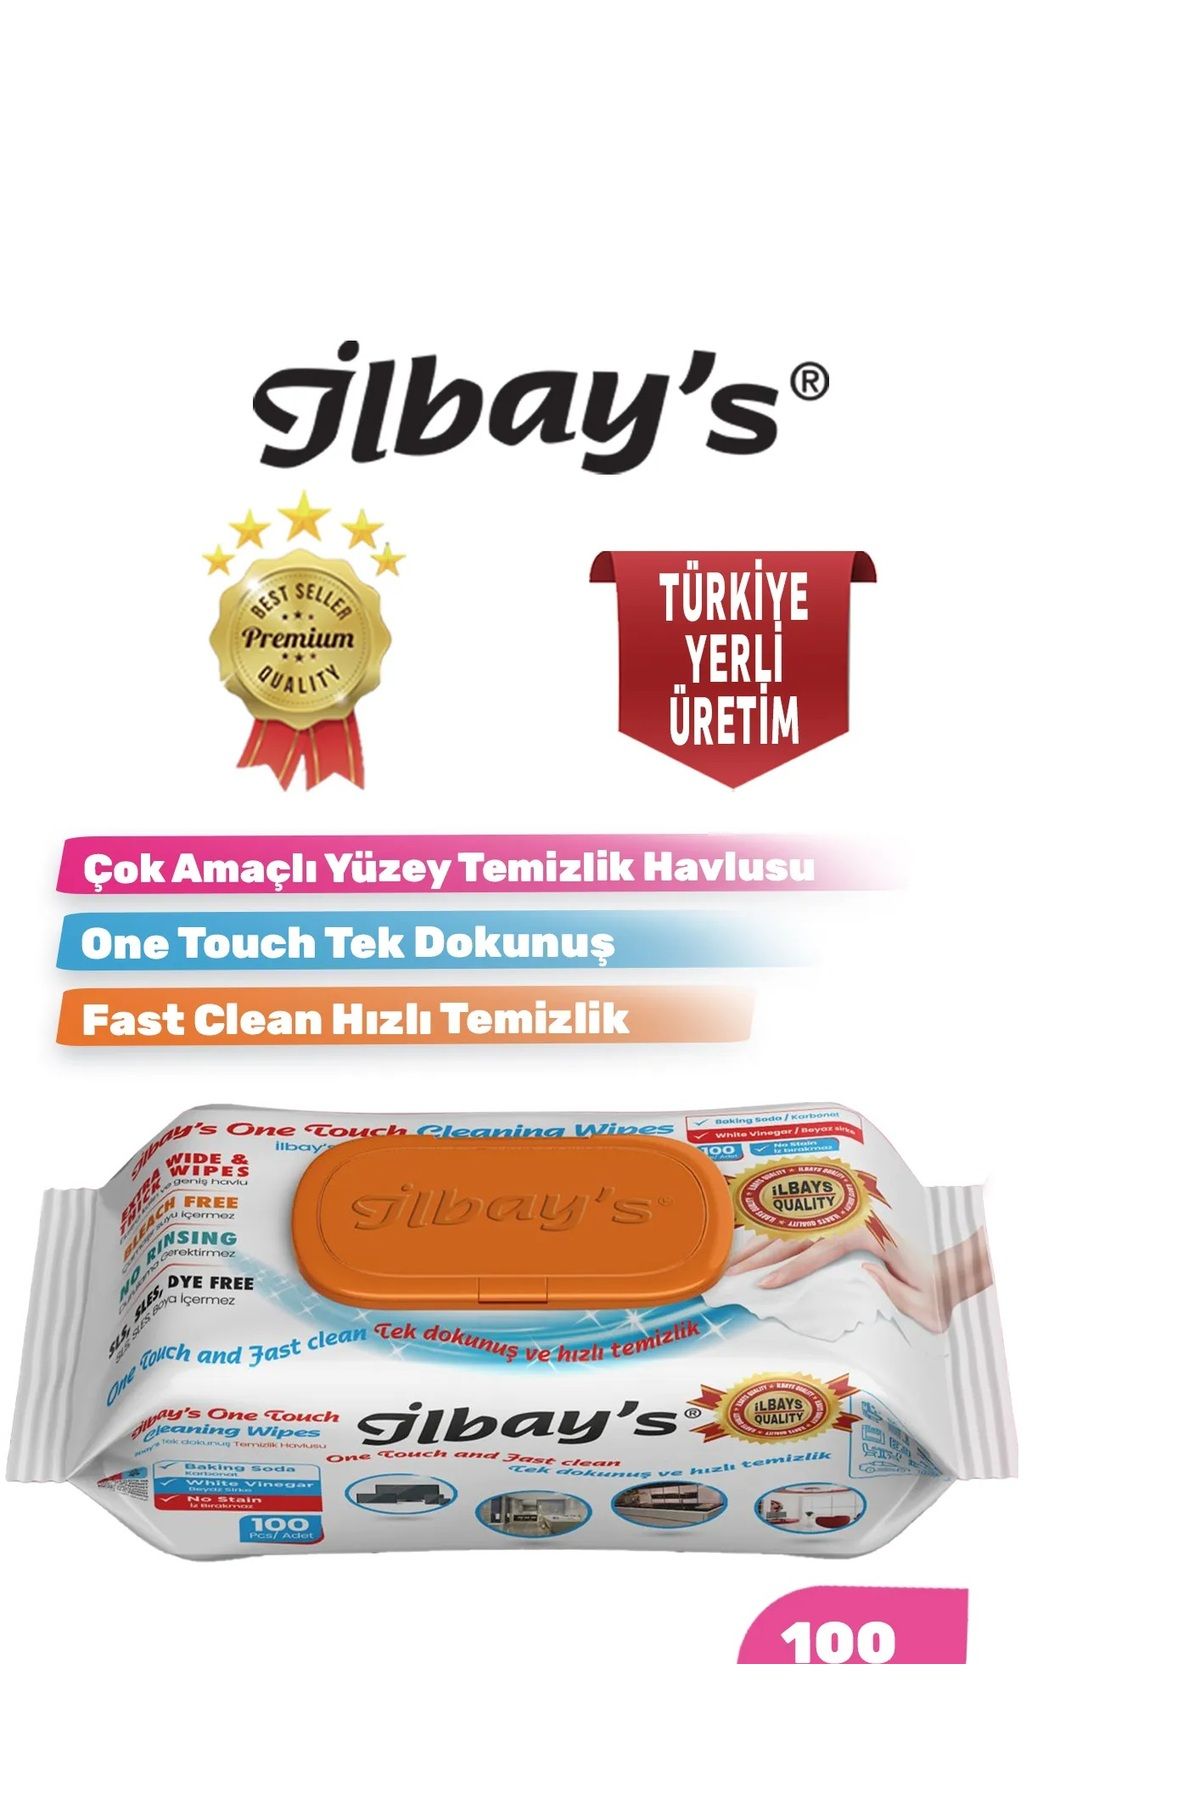 İlbay's Easy Clean Çok Amaçlı Yüzey Temizlik Islak Havlusu Temizlik bezi 100 Yaprak